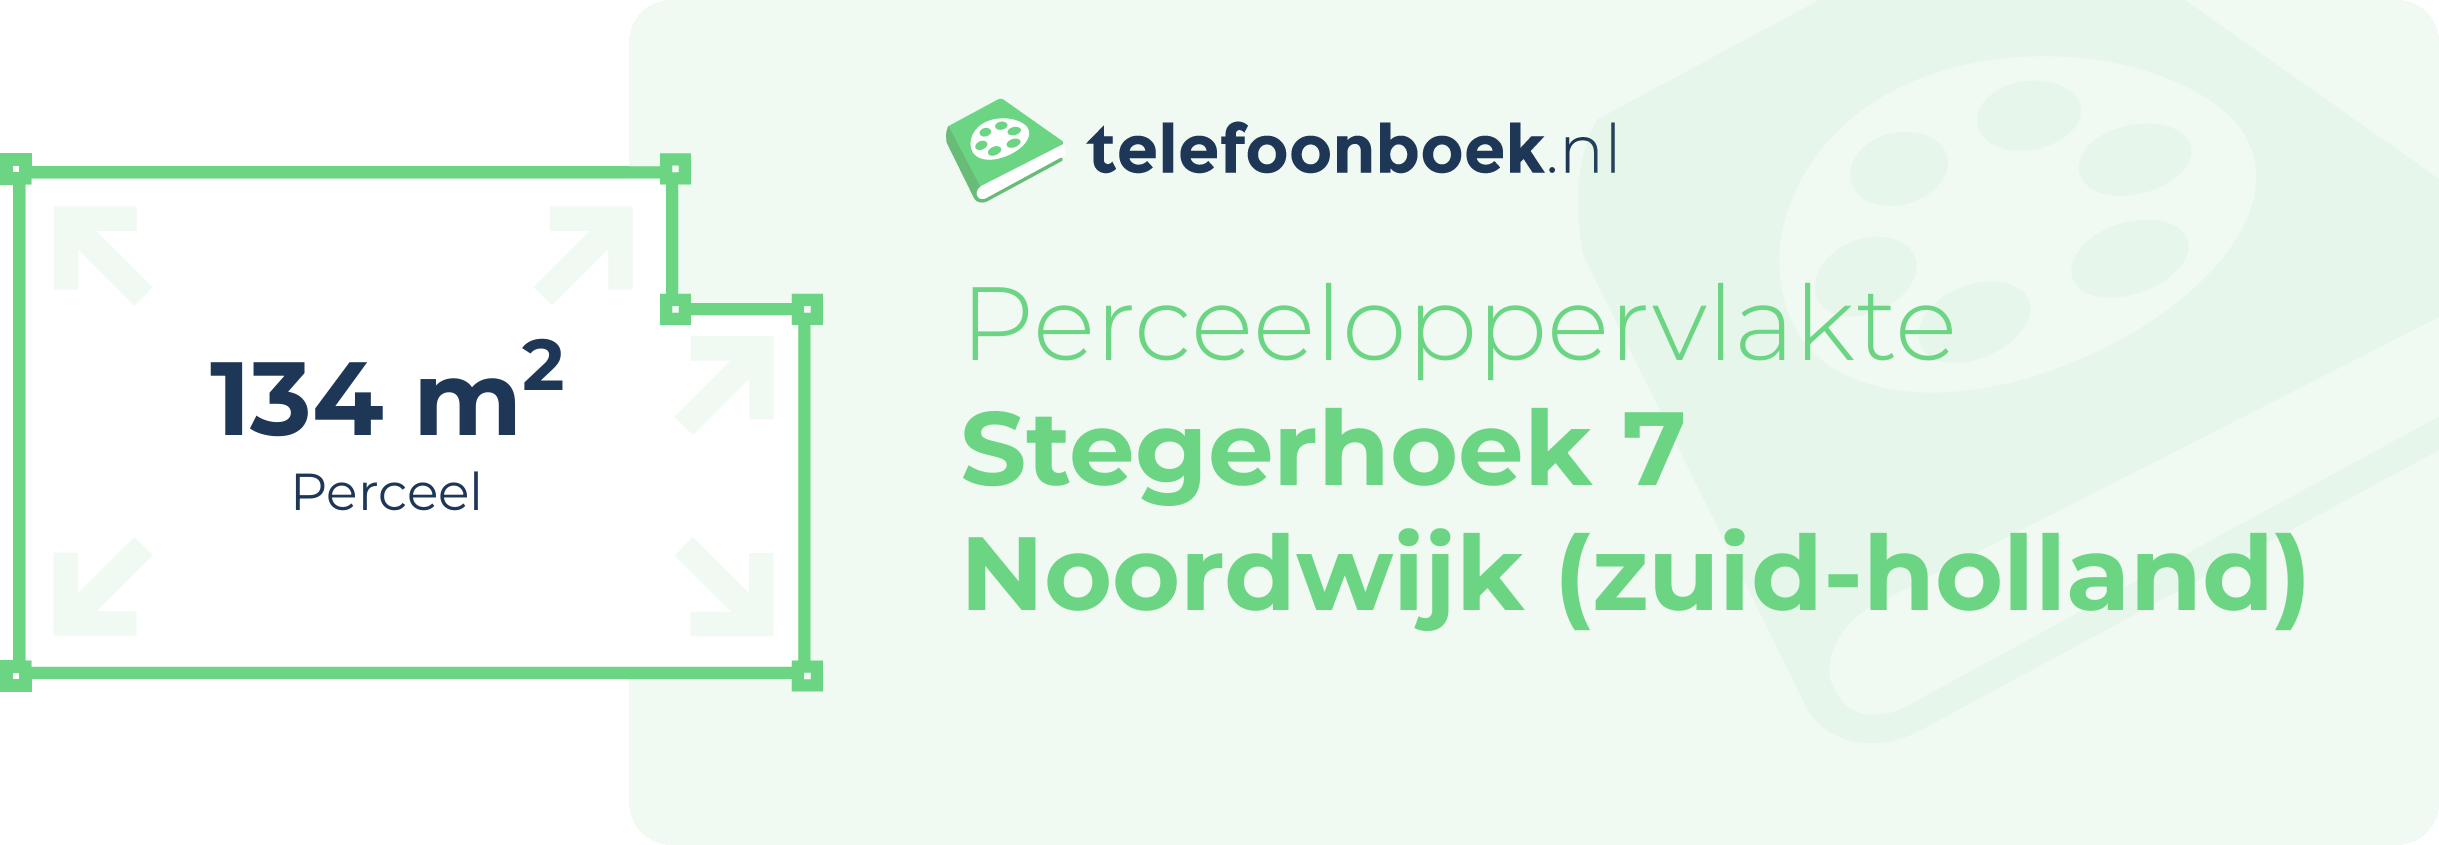 Perceeloppervlakte Stegerhoek 7 Noordwijk (Zuid-Holland)